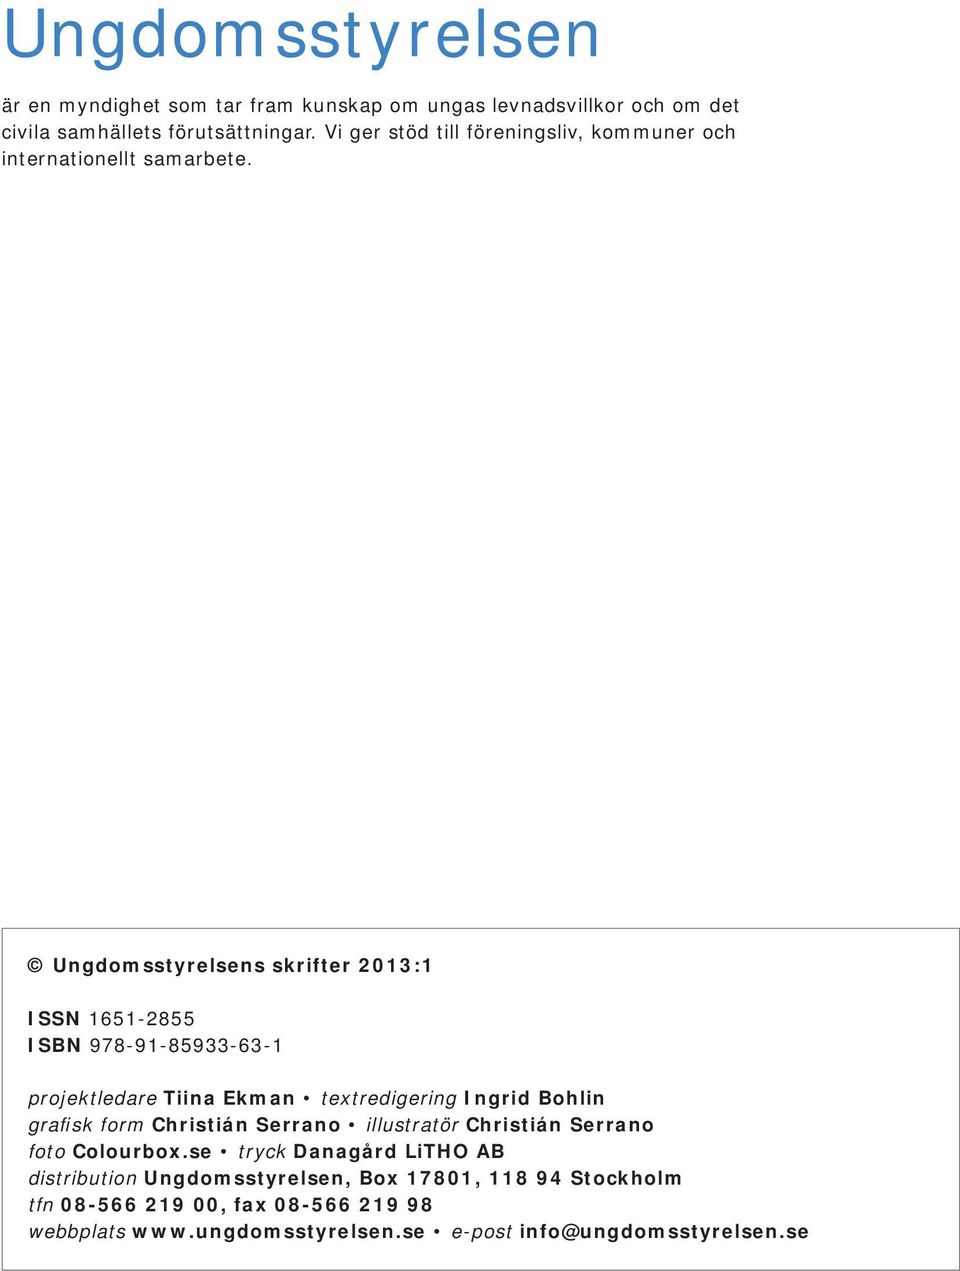 Ungdomsstyrelsens skrifter 2013:1 ISSN 1651-2855 ISBN 978-91-85933-63-1 projektledare Tiina Ekman textredigering Ingrid Bohlin grafisk form